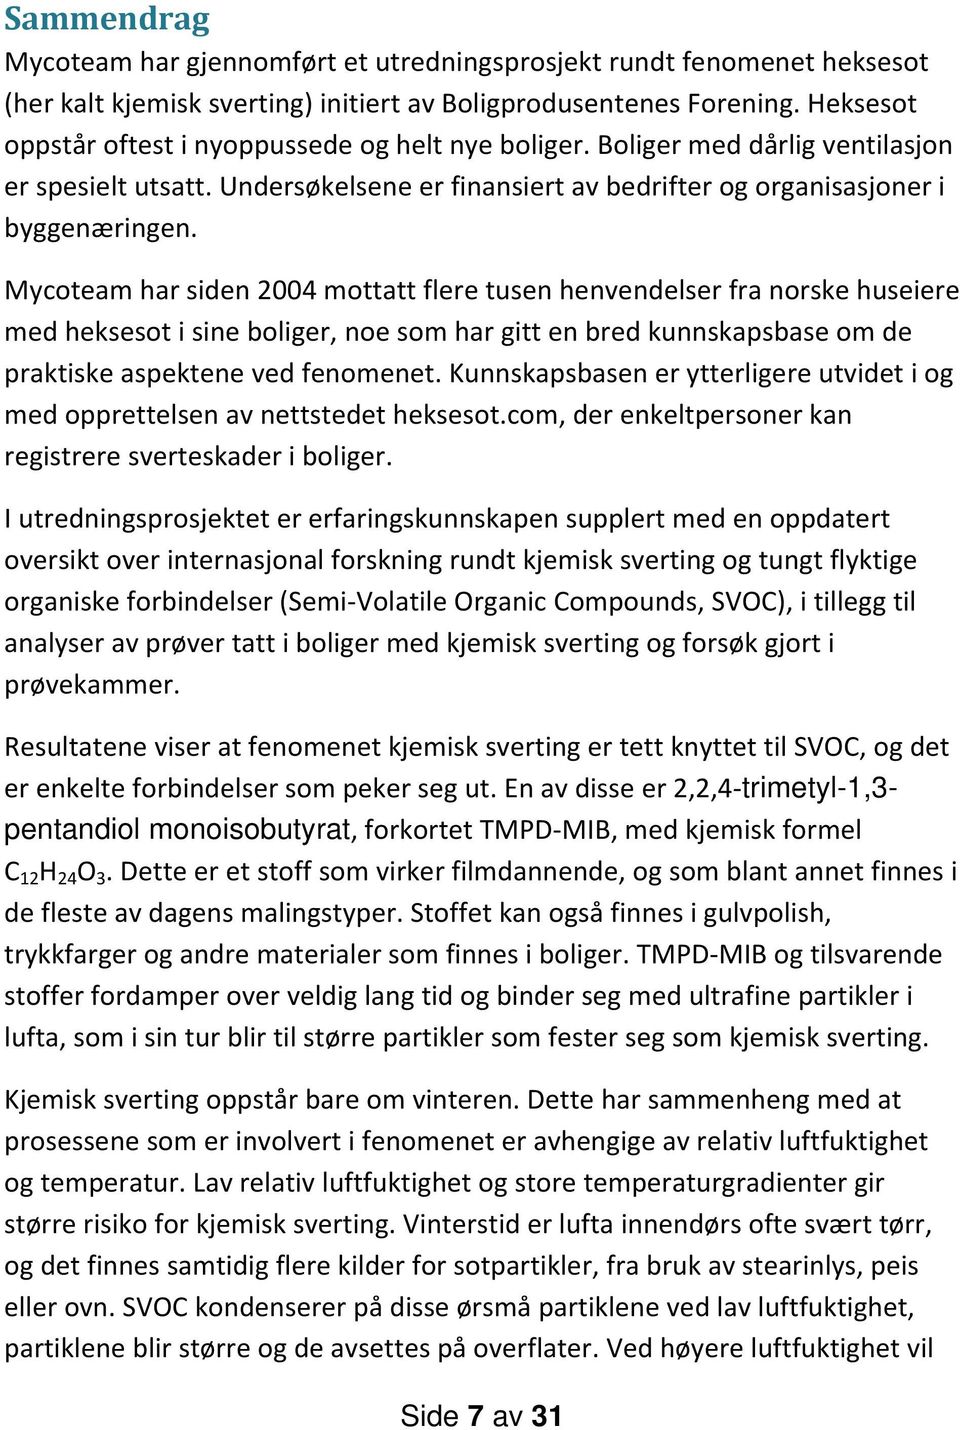 Mycoteam har siden 2004 mottatt flere tusen henvendelser fra norske huseiere med heksesot i sine boliger, noe som har gitt en bred kunnskapsbase om de praktiske aspektene ved fenomenet.